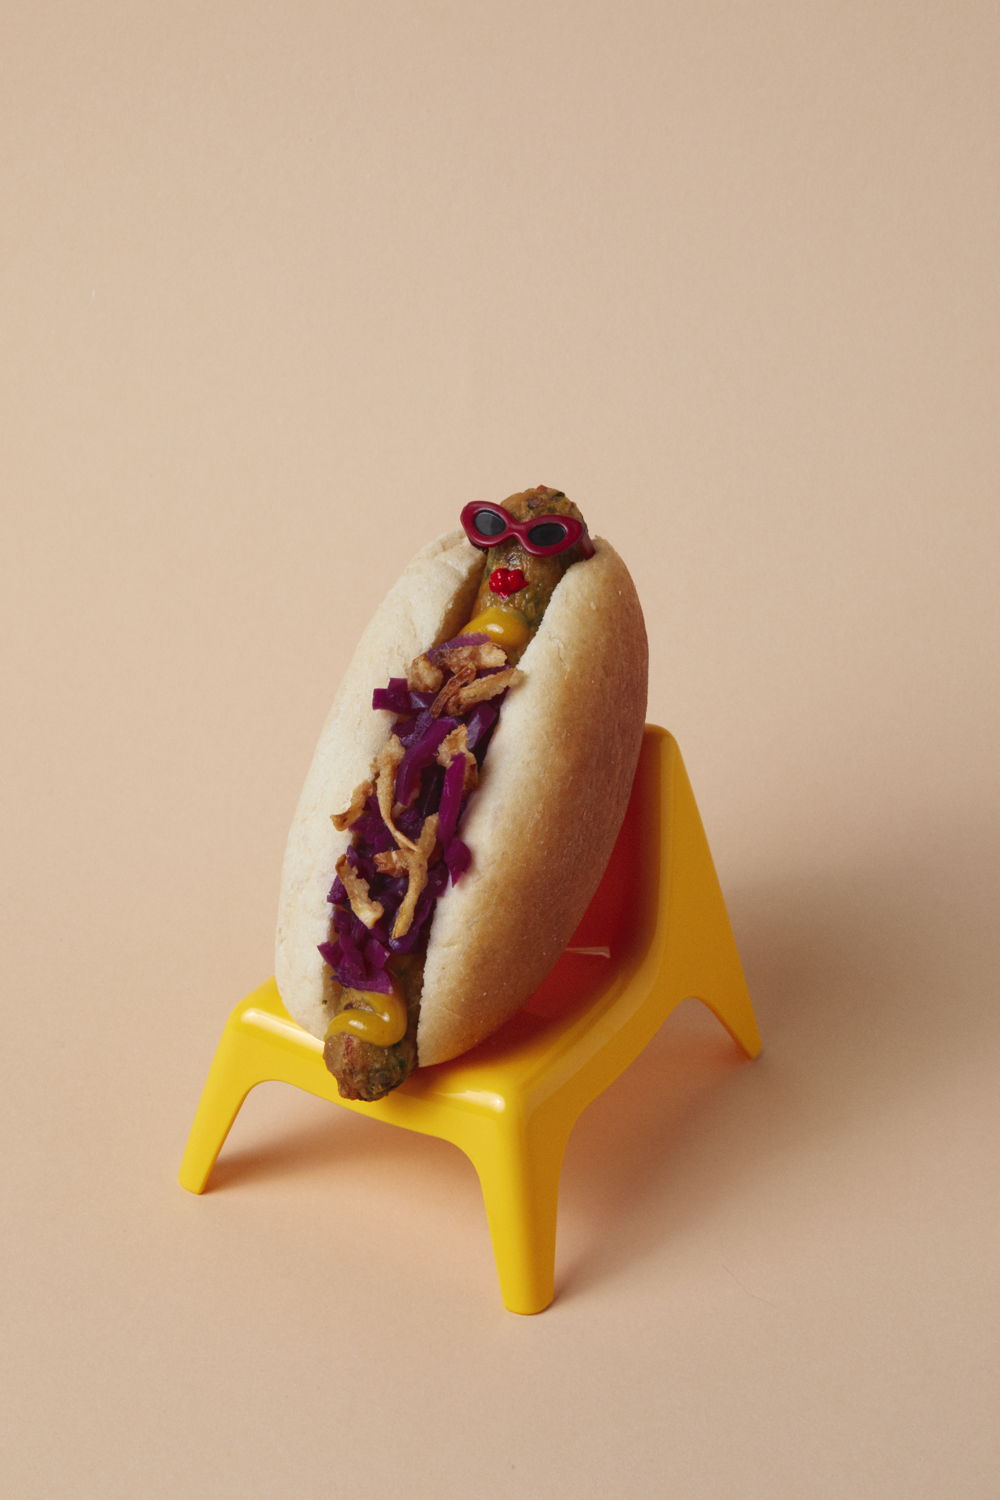 Veggie hotdog - IKEA x Burpzine